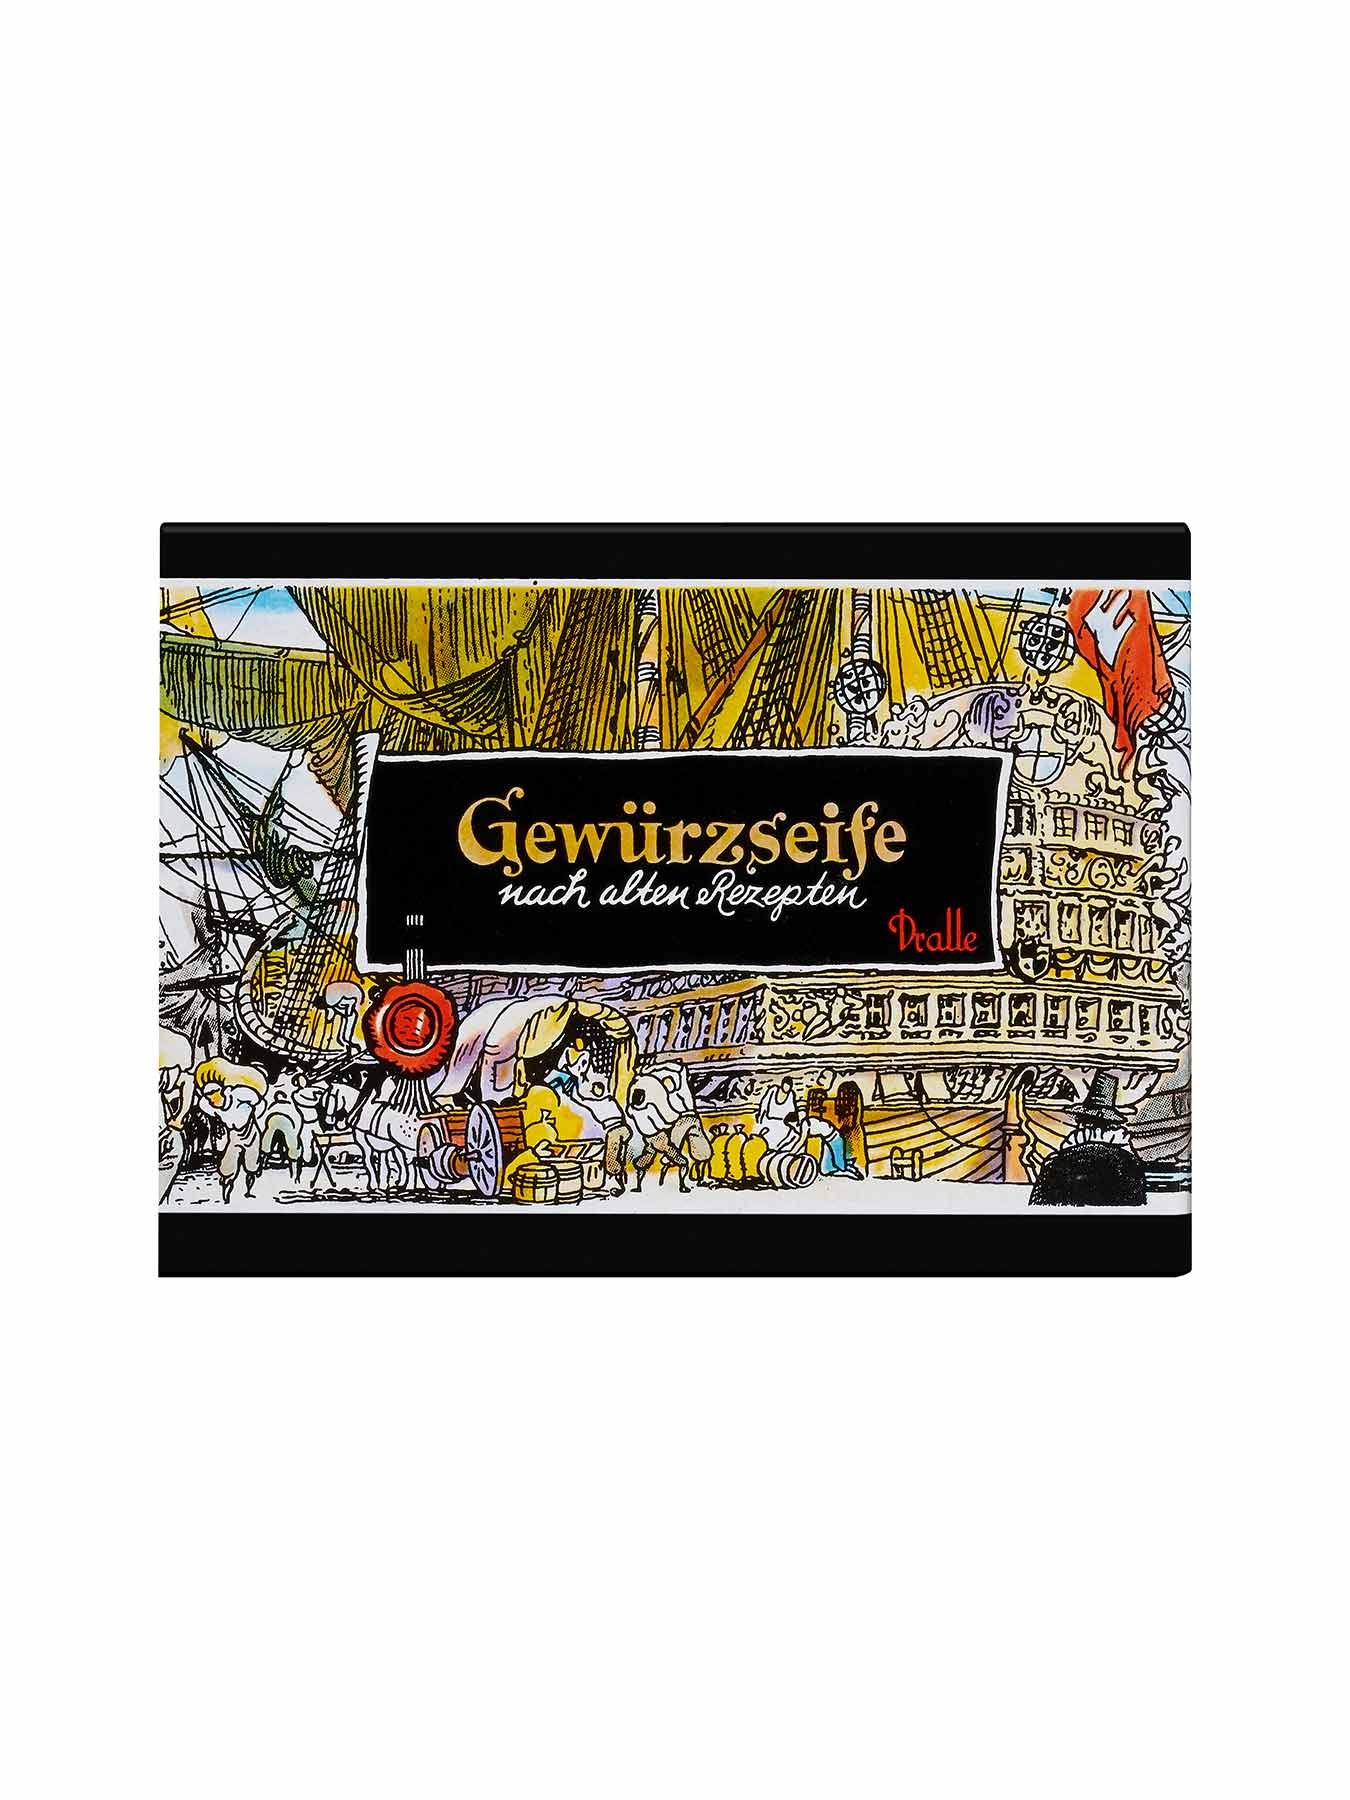 Gewuerzseife-Dralle-125g-Vorderseite-Garnier-Deutschland-gr